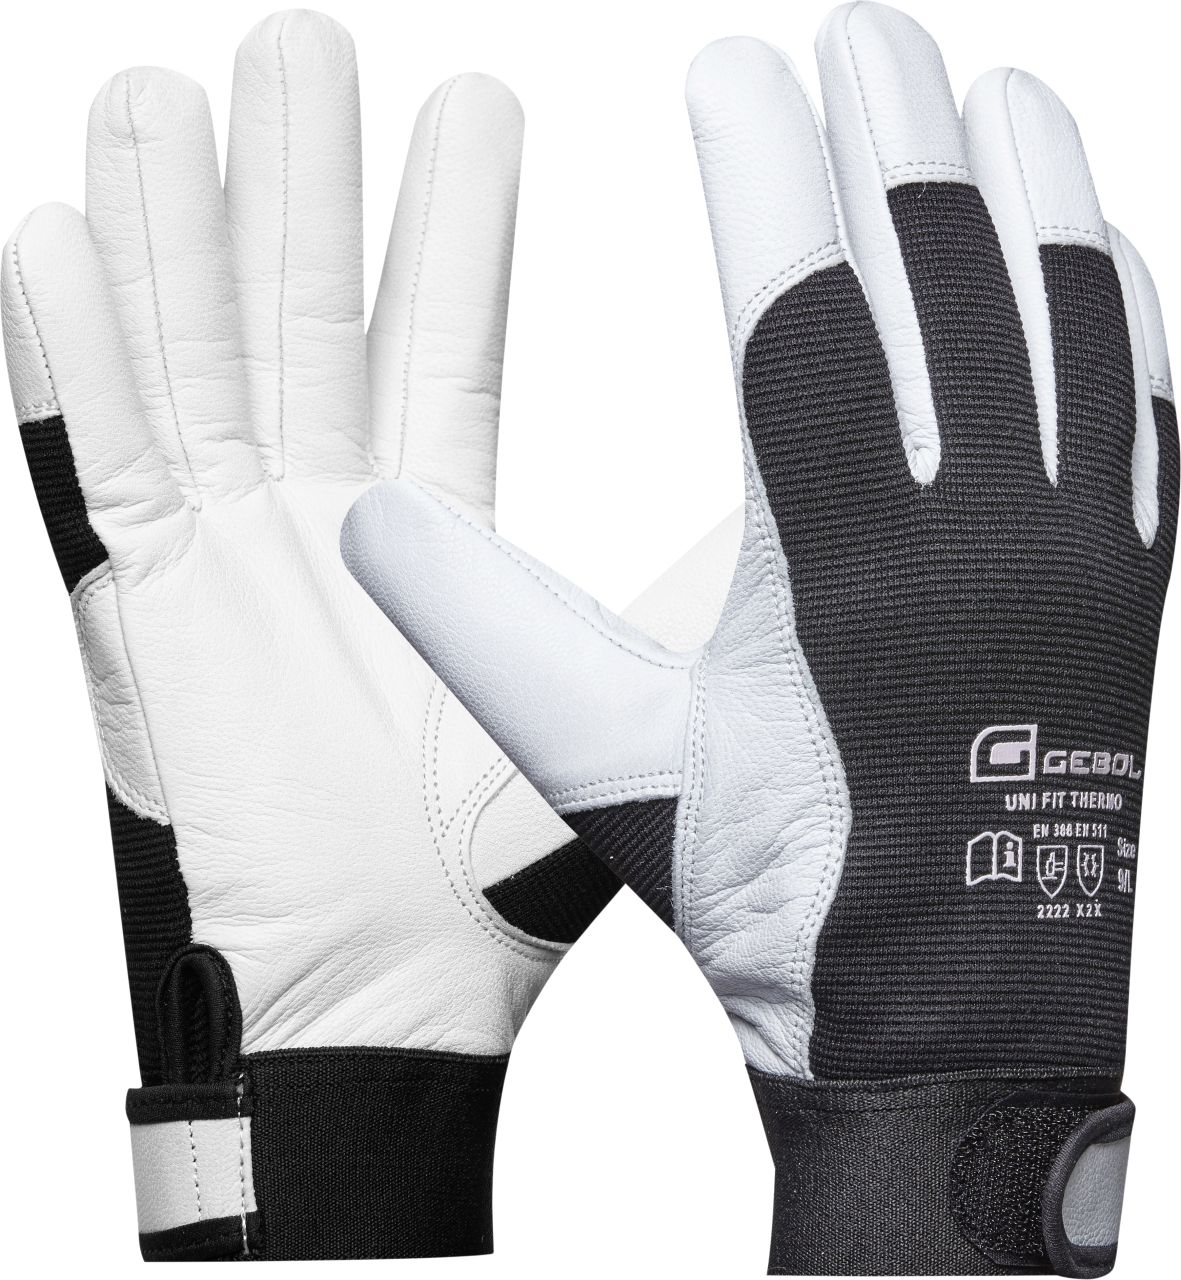 Gebol Handschuh Uni Fit Comfort weiß/schwarz von GEBOL